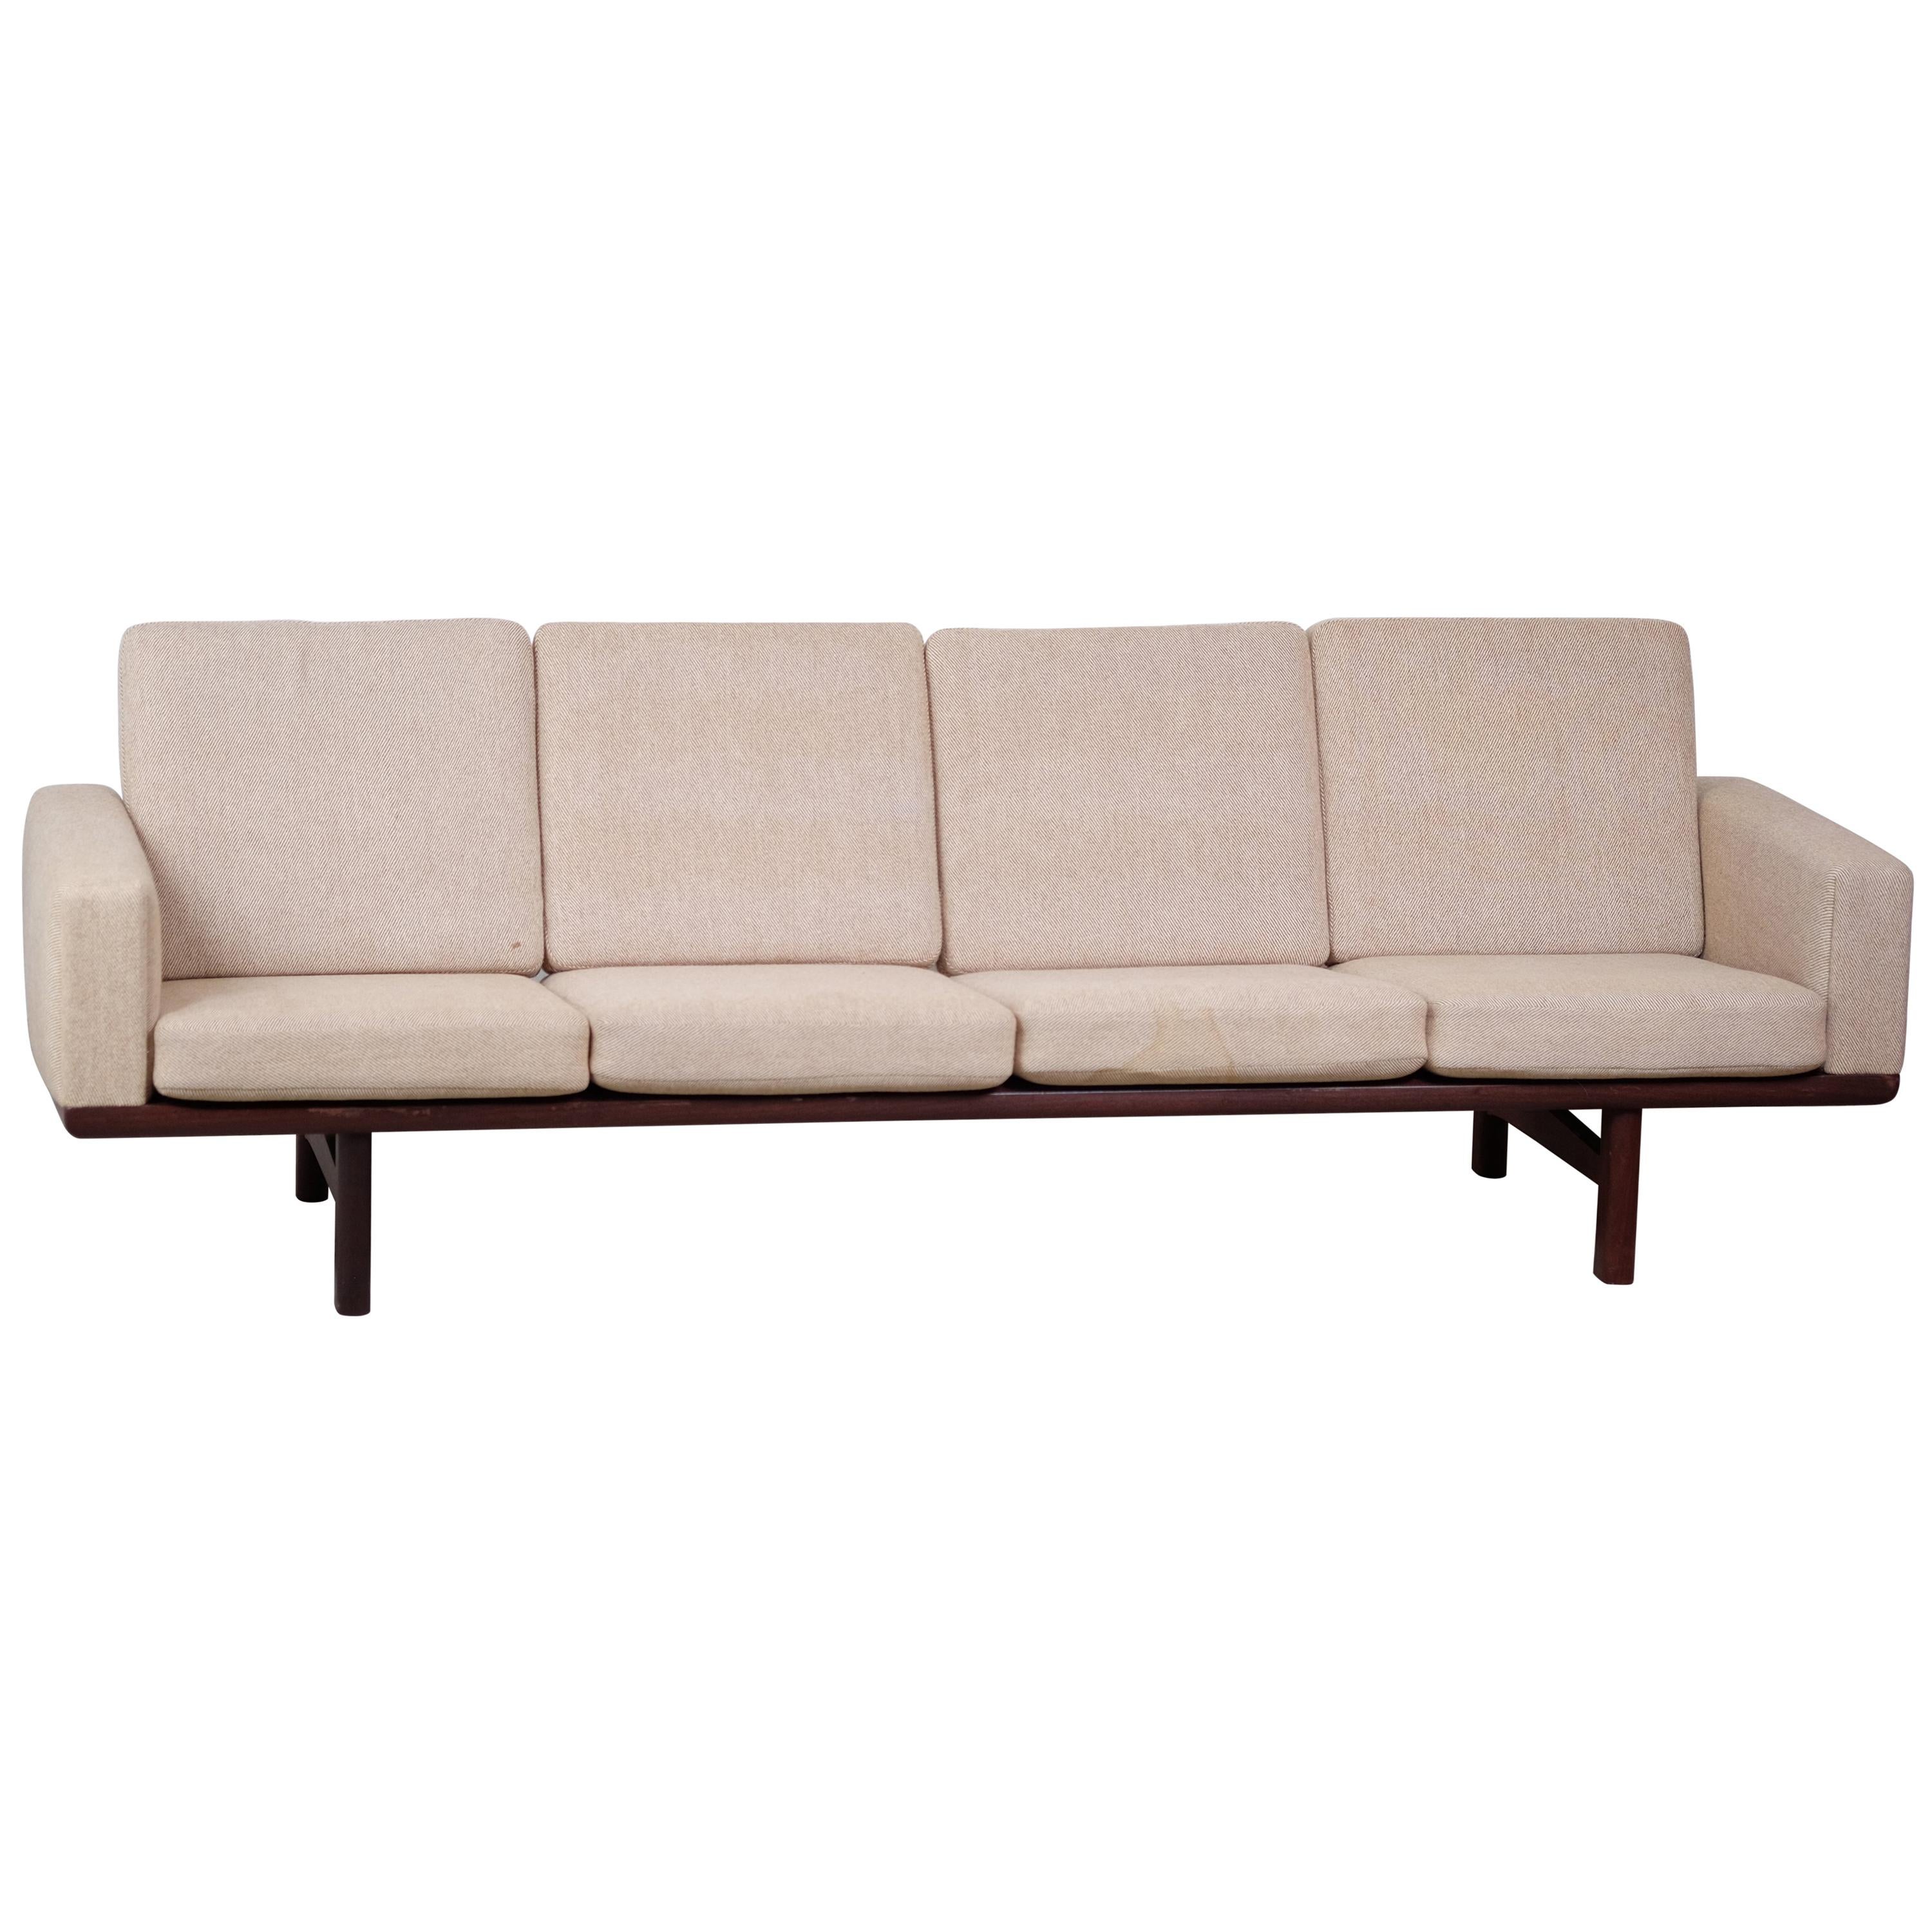 Danish Model 236/4 Sofa by Hans J. Wegner for Getama Vendor Reference Number For Sale